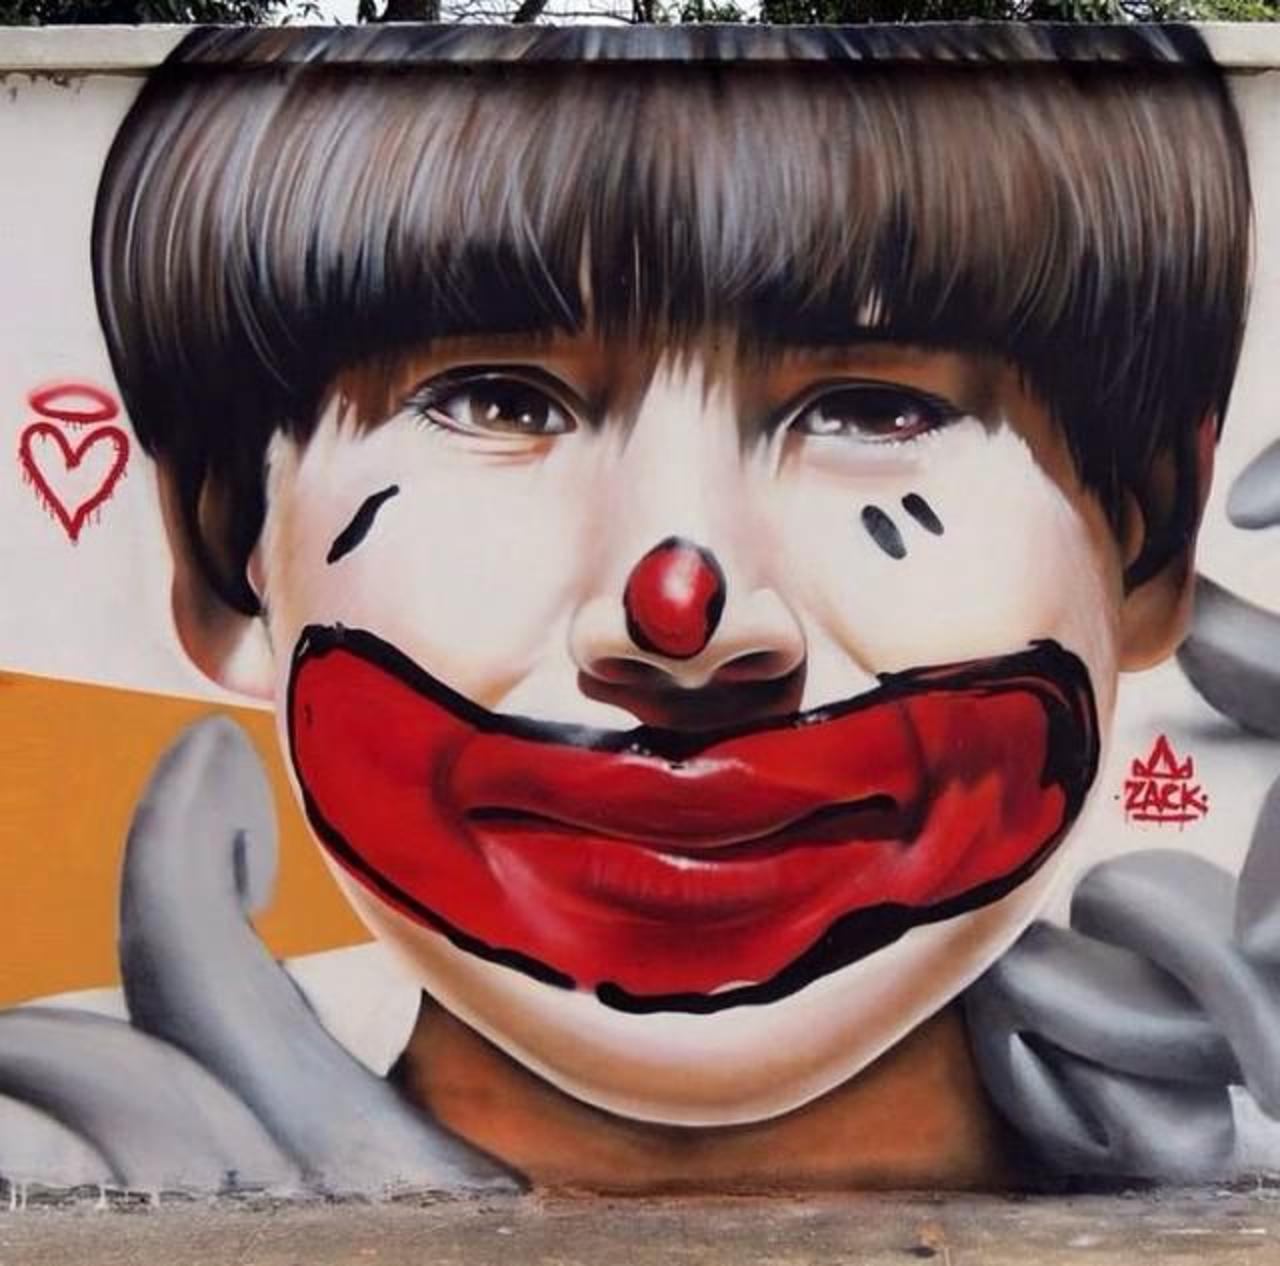 “@MyjoTown: Via @GoogleStreetArt: Unique Street Art by Nilo Zack - Brazil #art #mural #streetart #graffiti  http://t.co/dM4o7eFH9R”